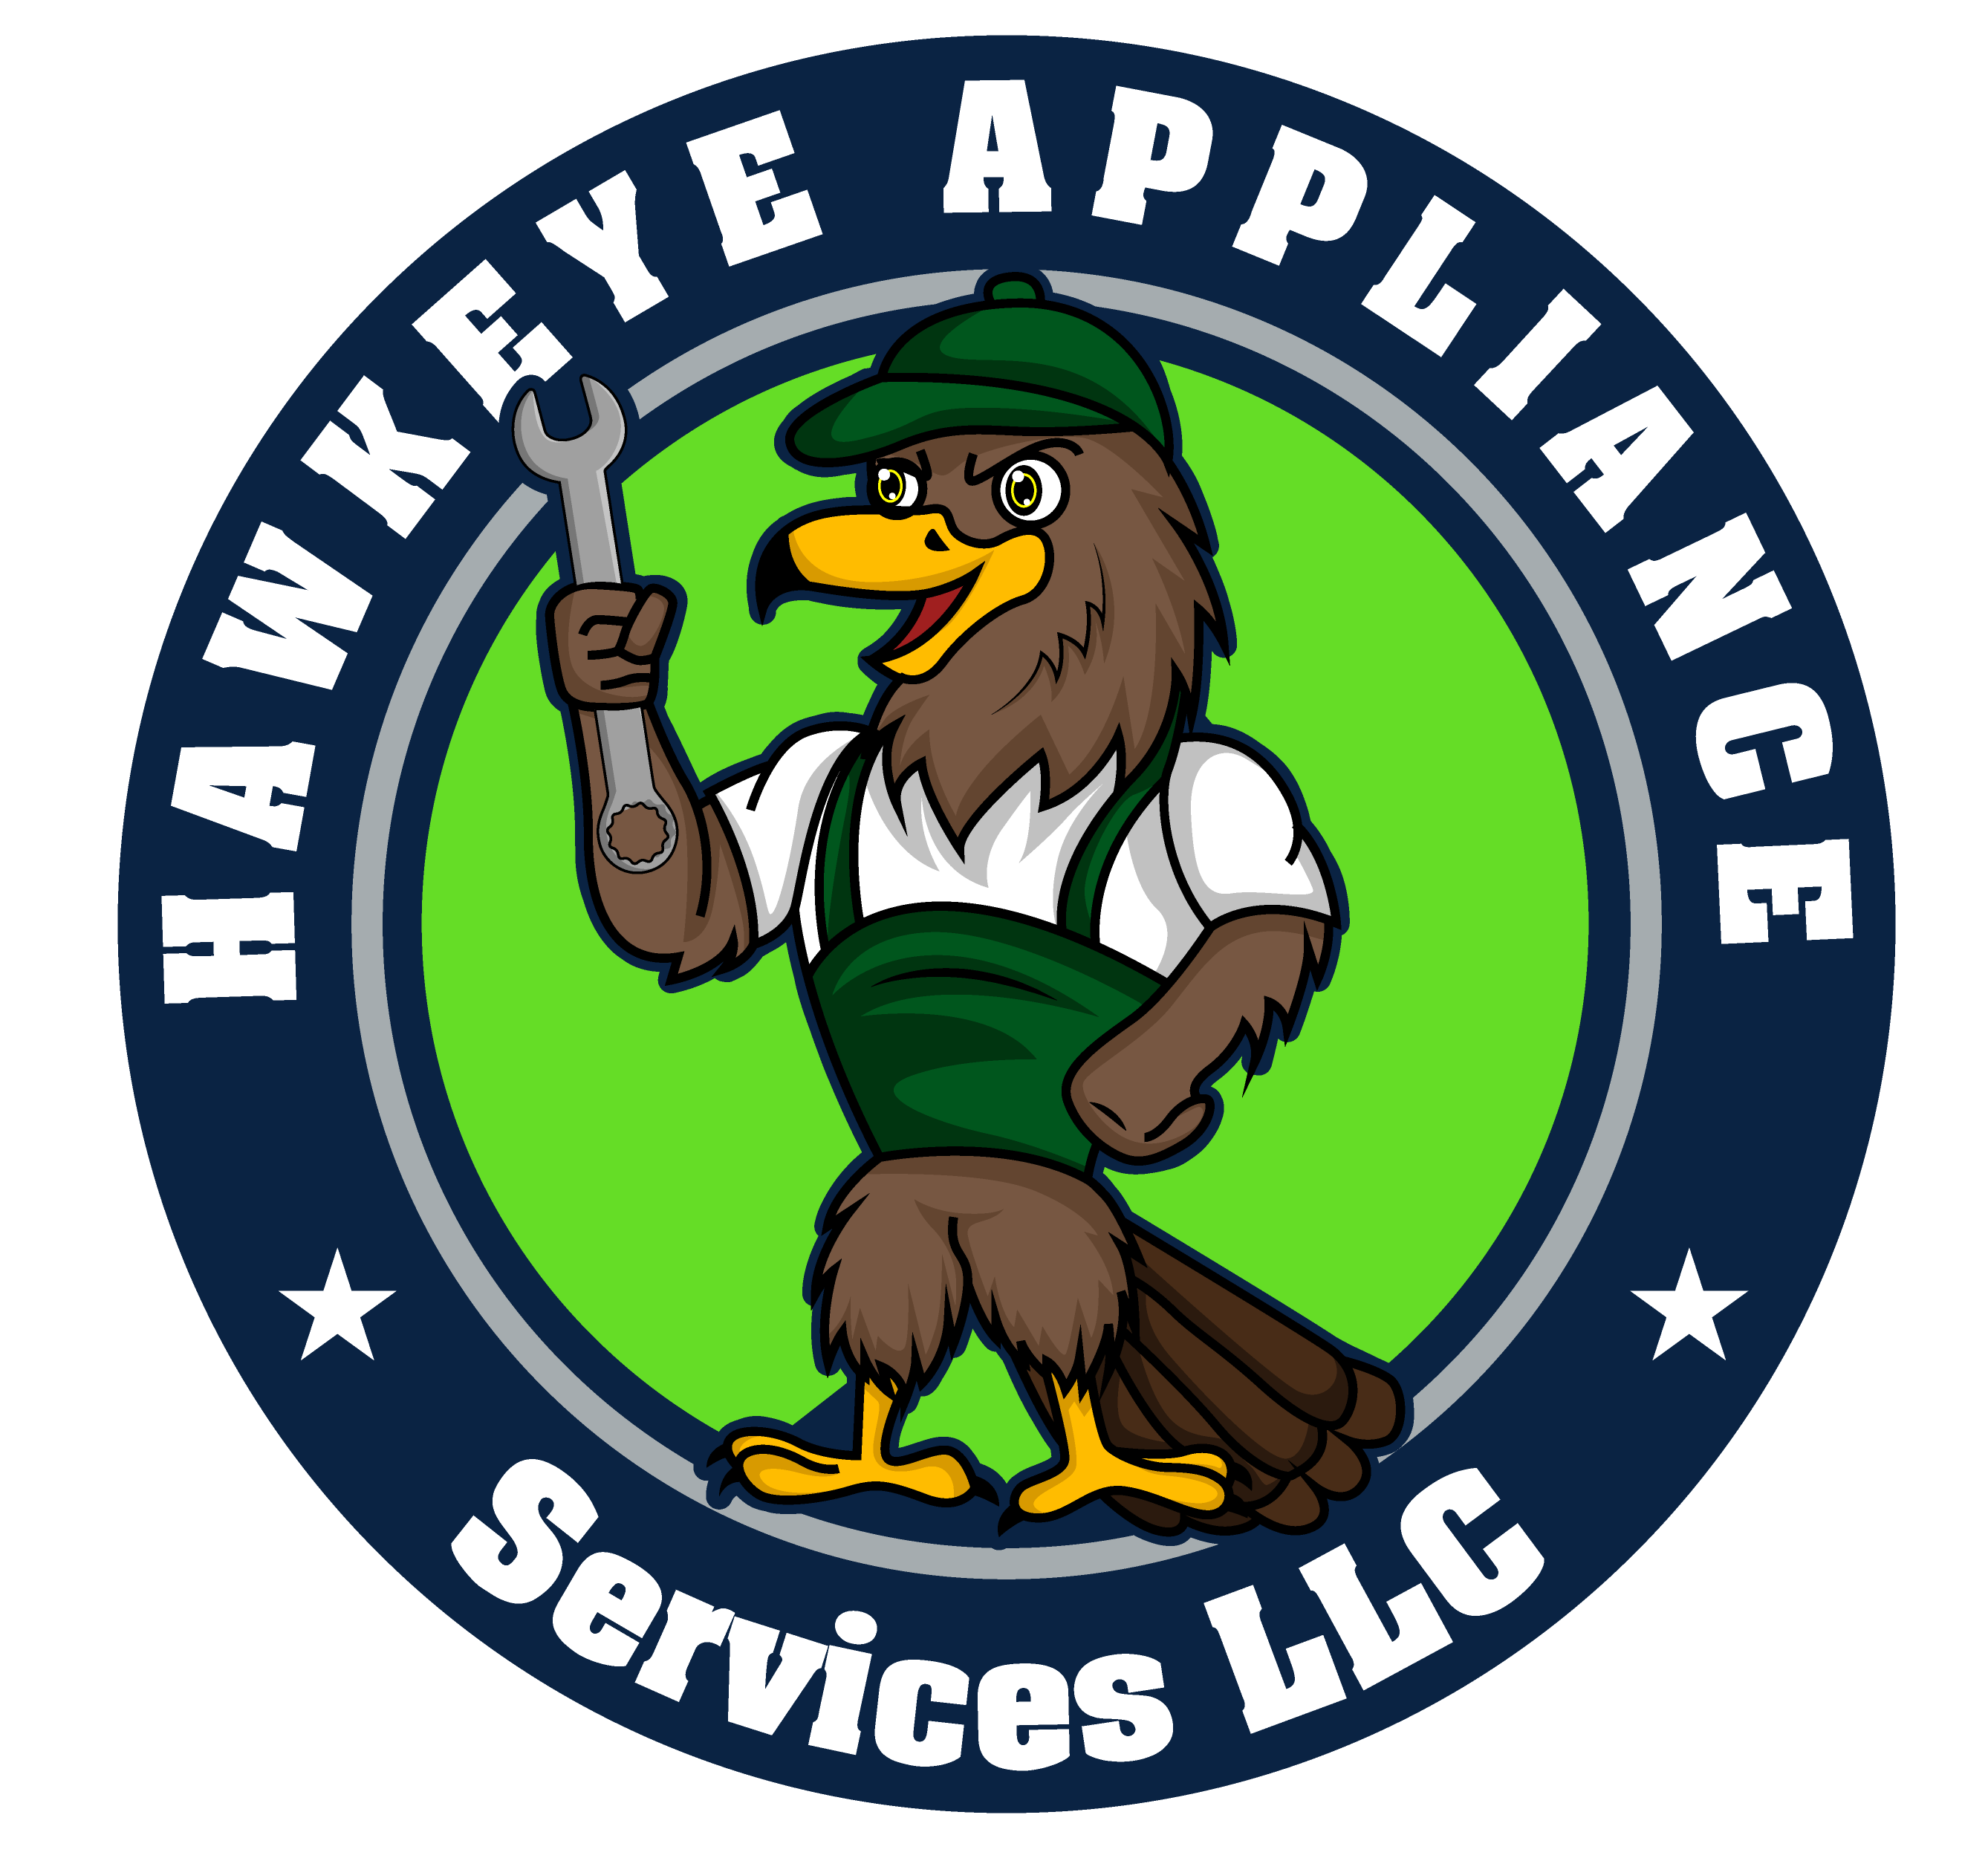 Hawkeye Appliances Services